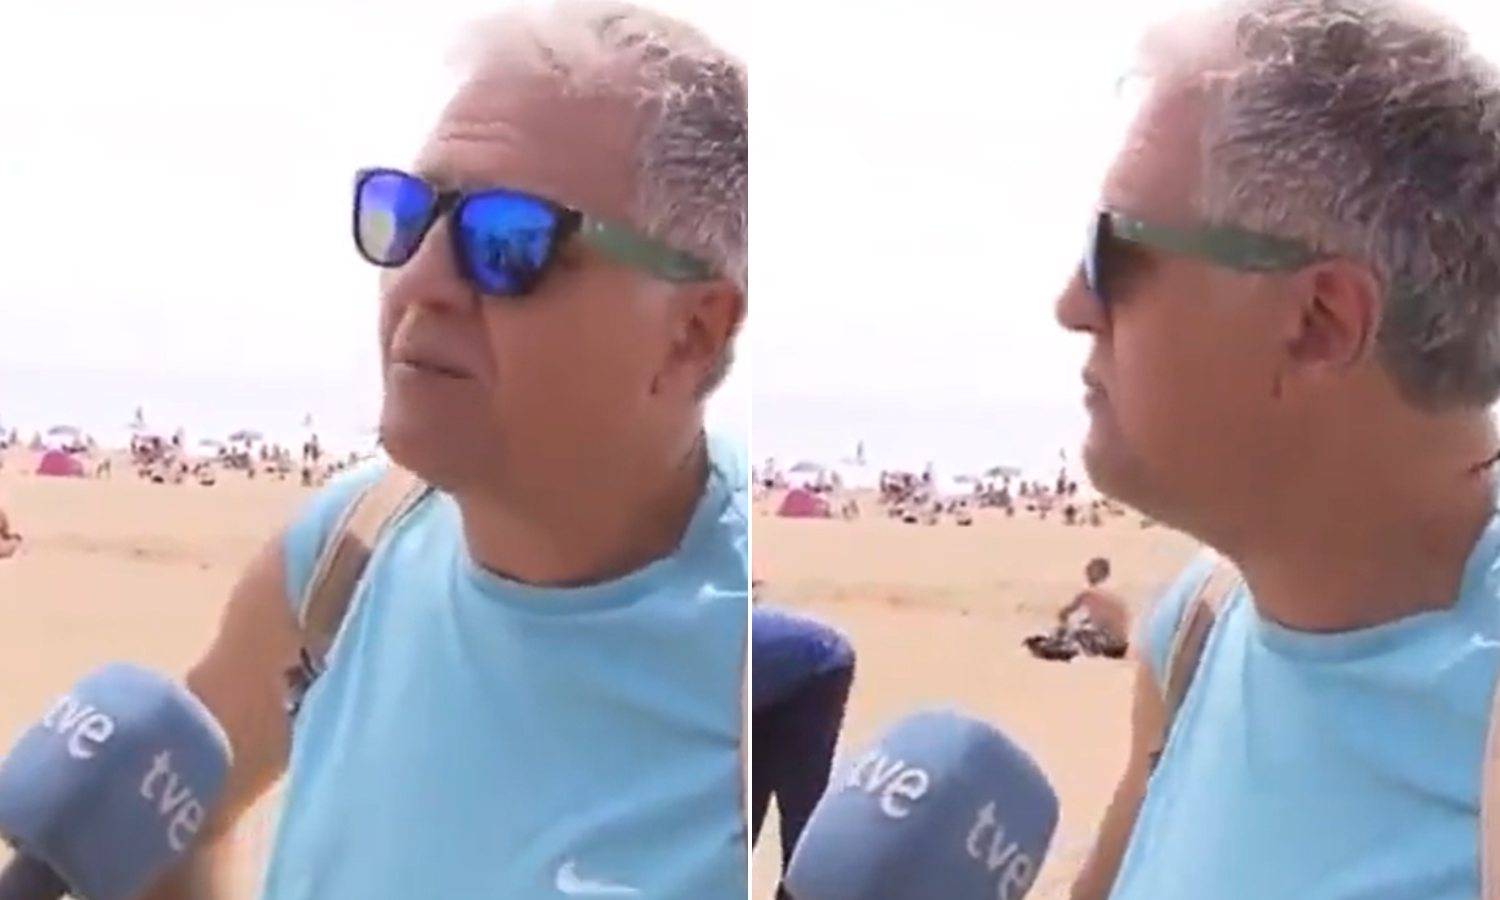 Urnebesni video: Turist priča kako je u Barceloni lijepo. A iza njega lopov krade nečiji ruksak